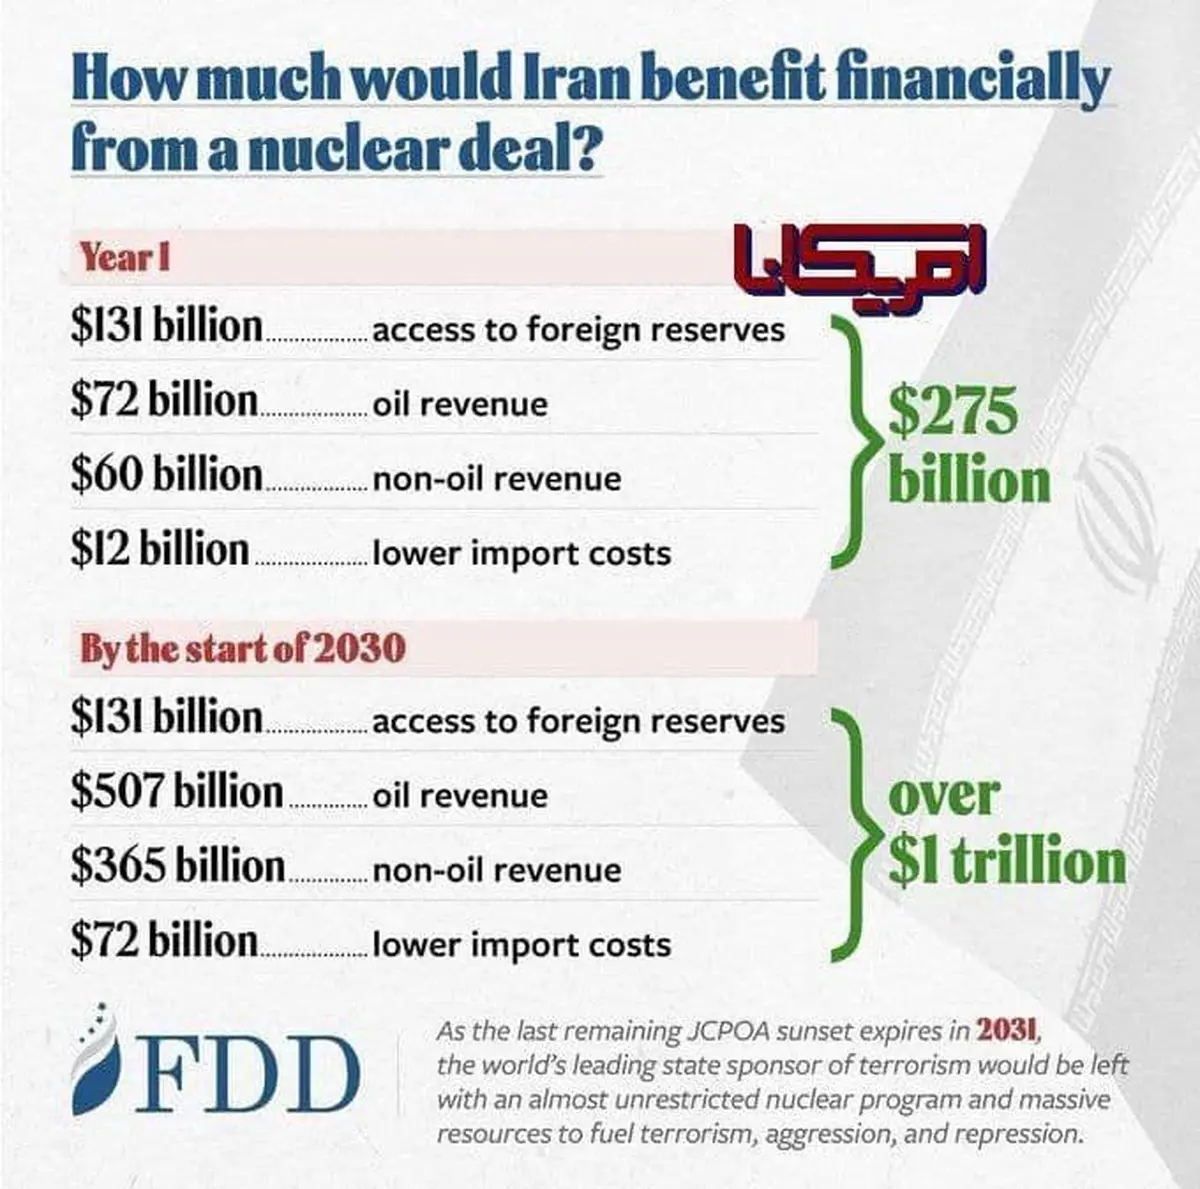 هزار میلیارد دلار در انتظار ایران | منتها بعد از توافق!